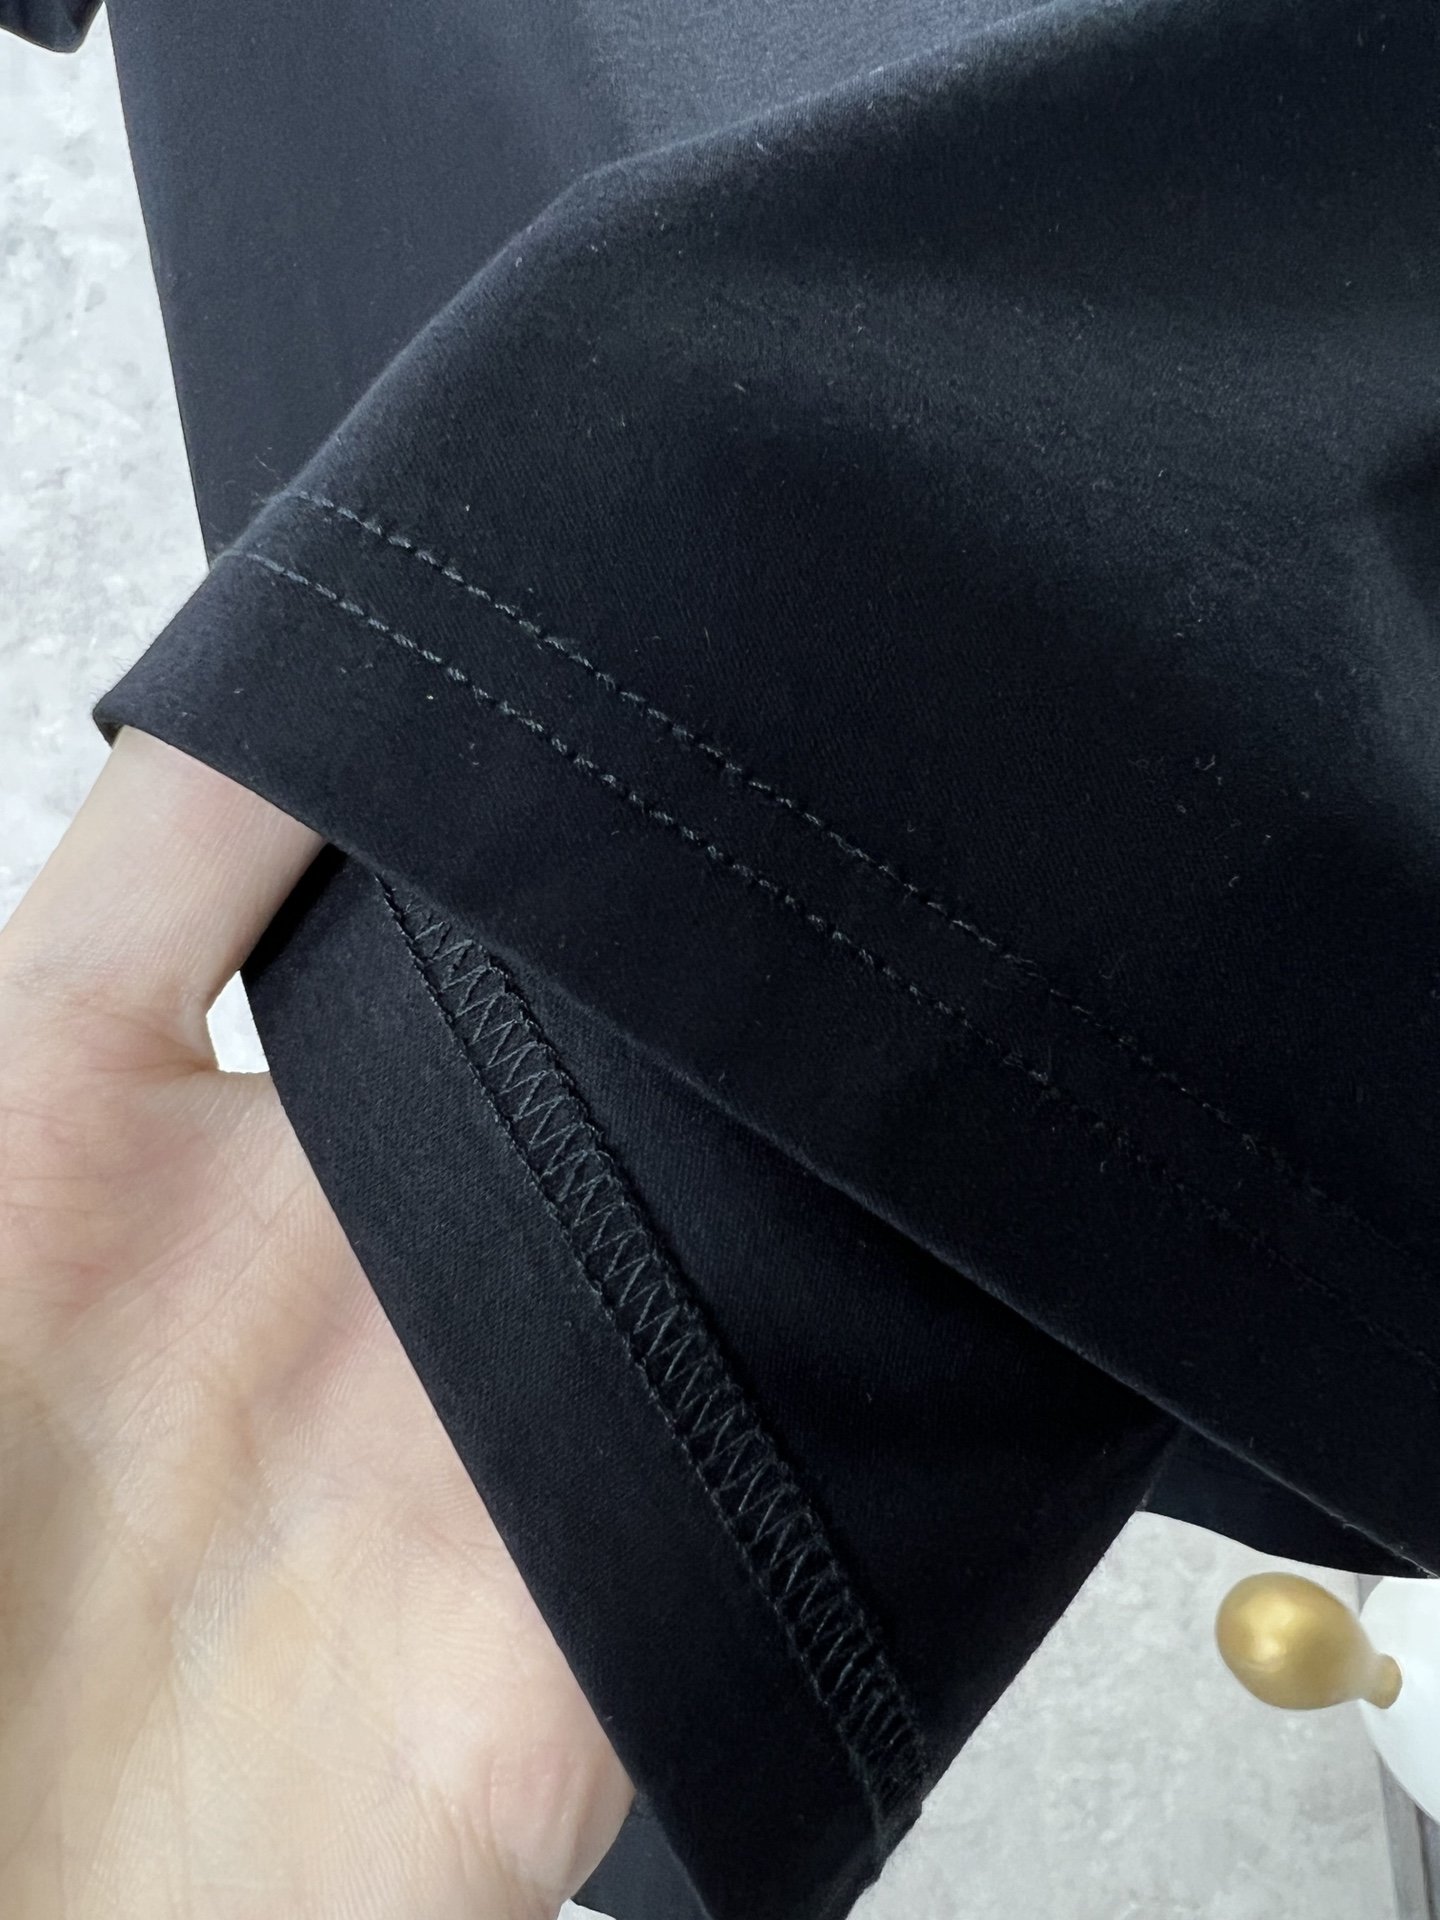 v2024ss最新款圆领短袖T恤上身效果面料重工印花定制定染螺纹领口不易变形手感非常舒服超级百搭好看的一